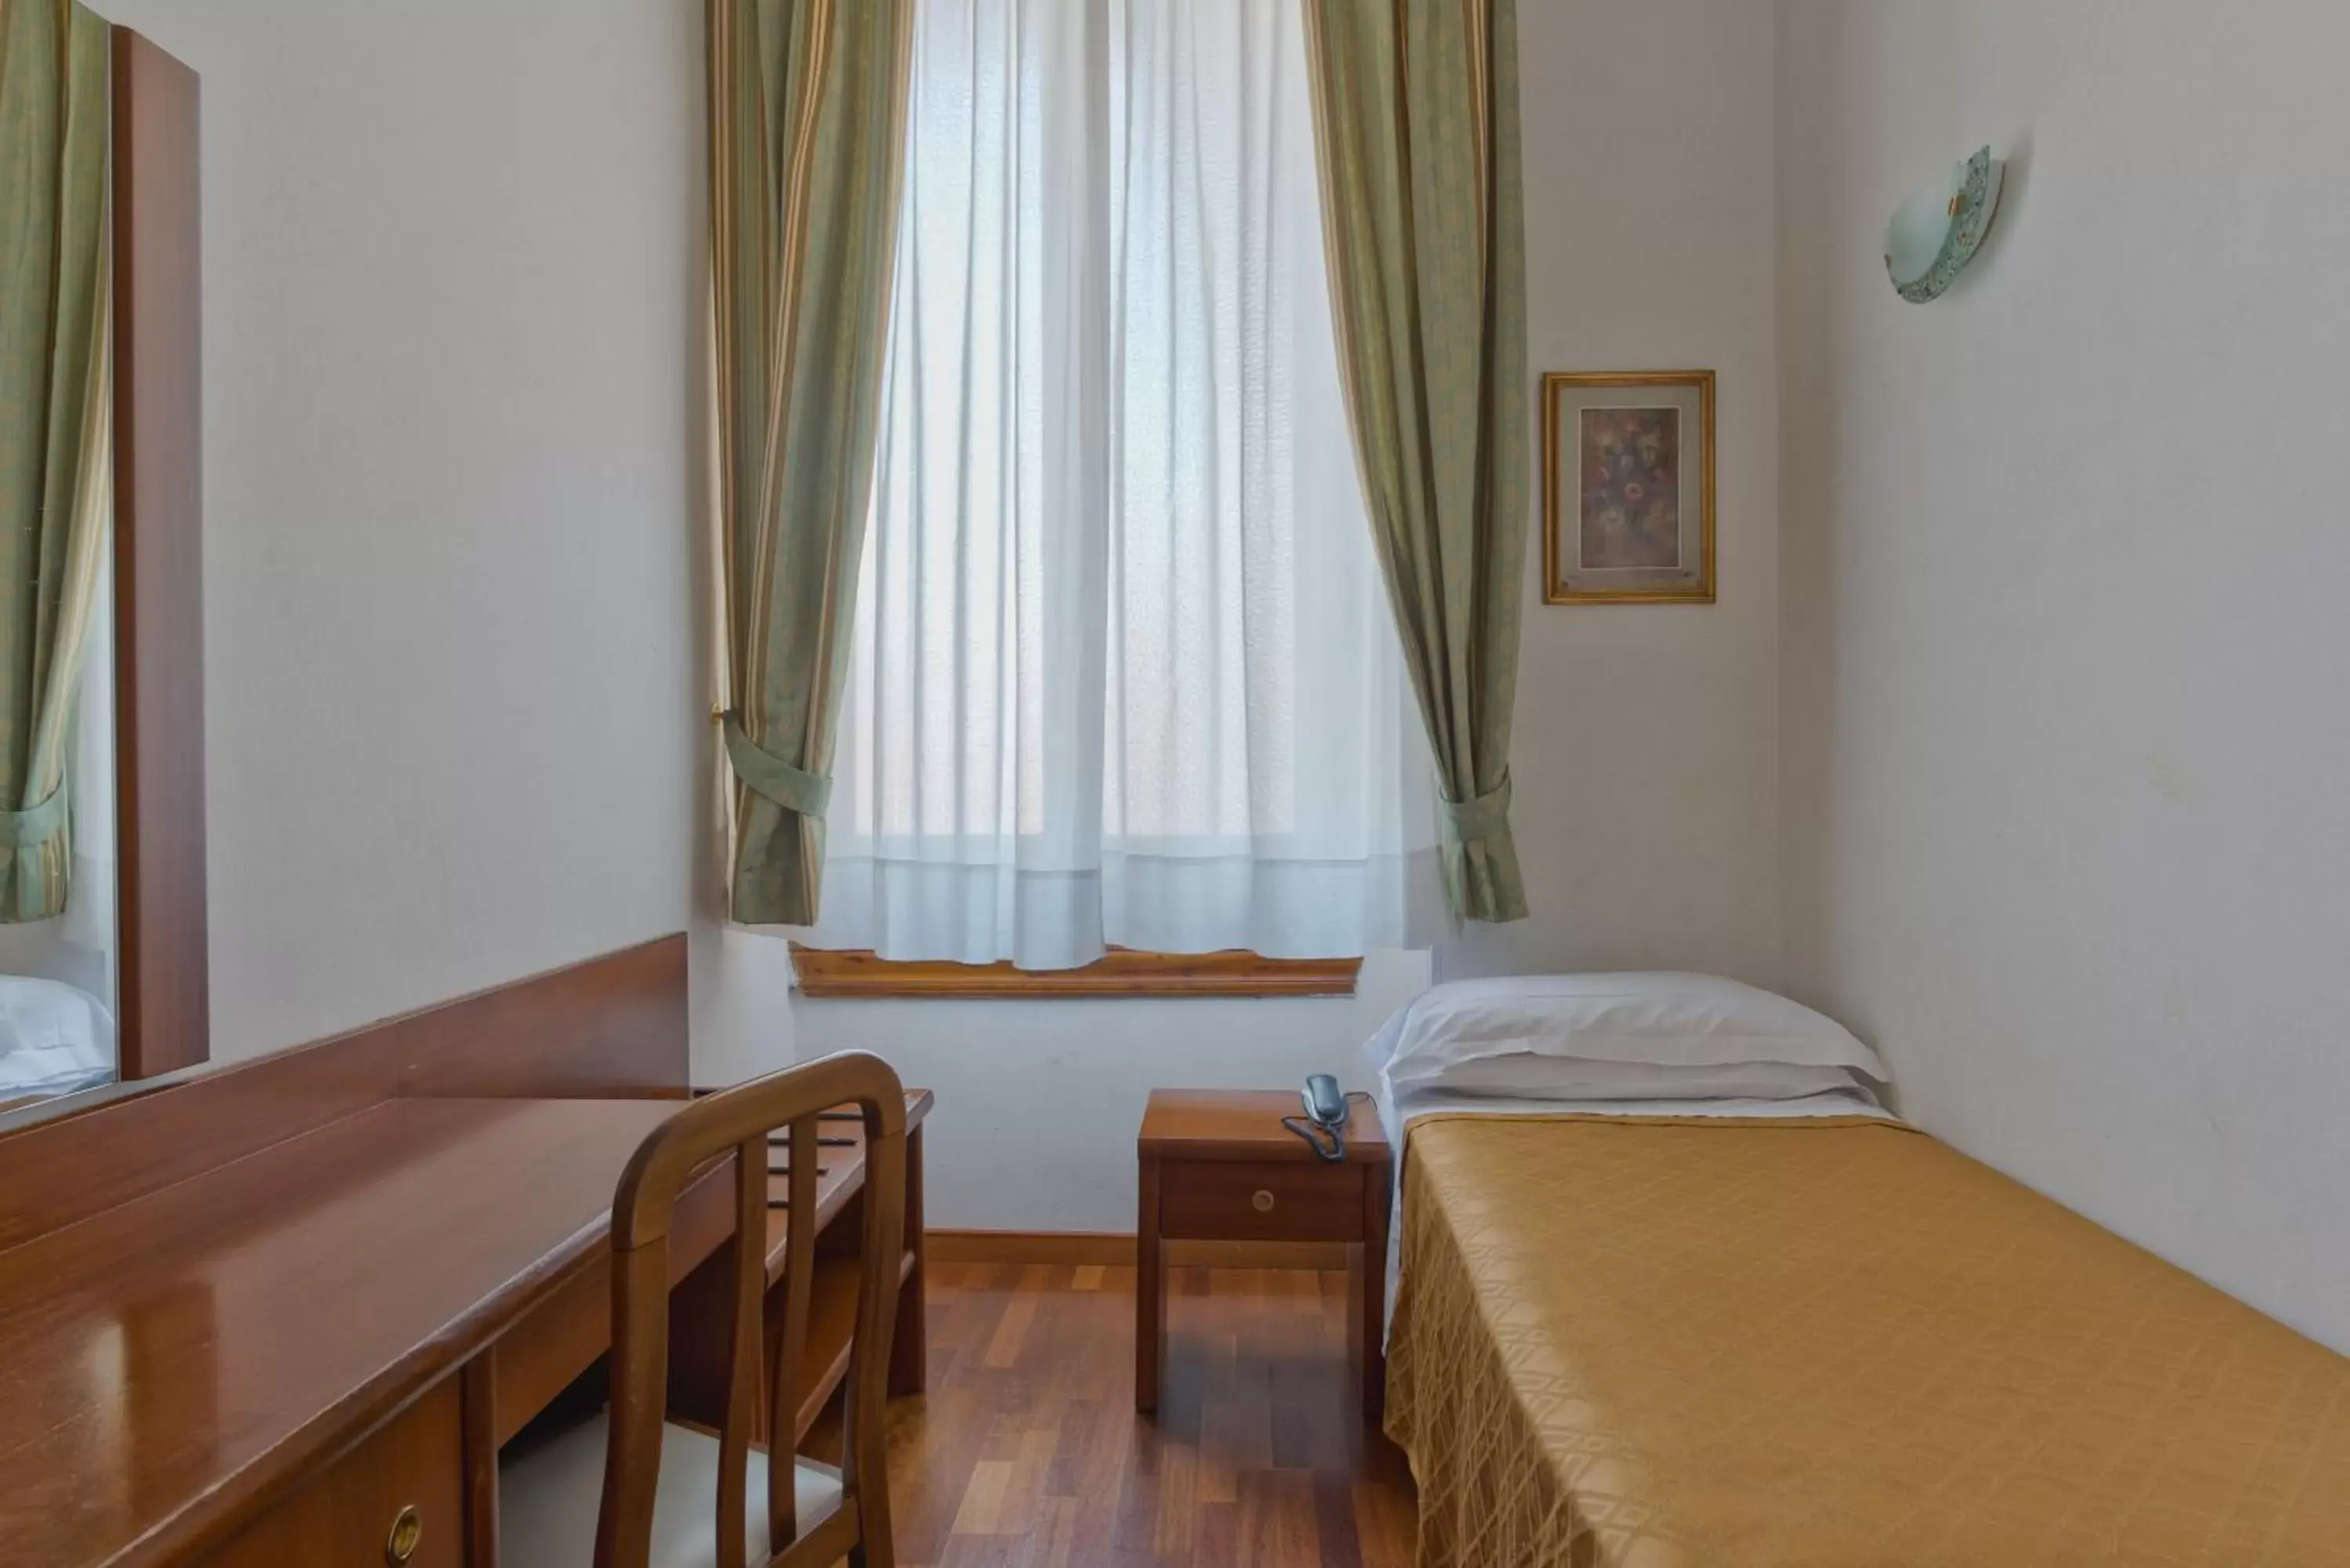 Small Single Room in Hotel Palazzo Vecchio